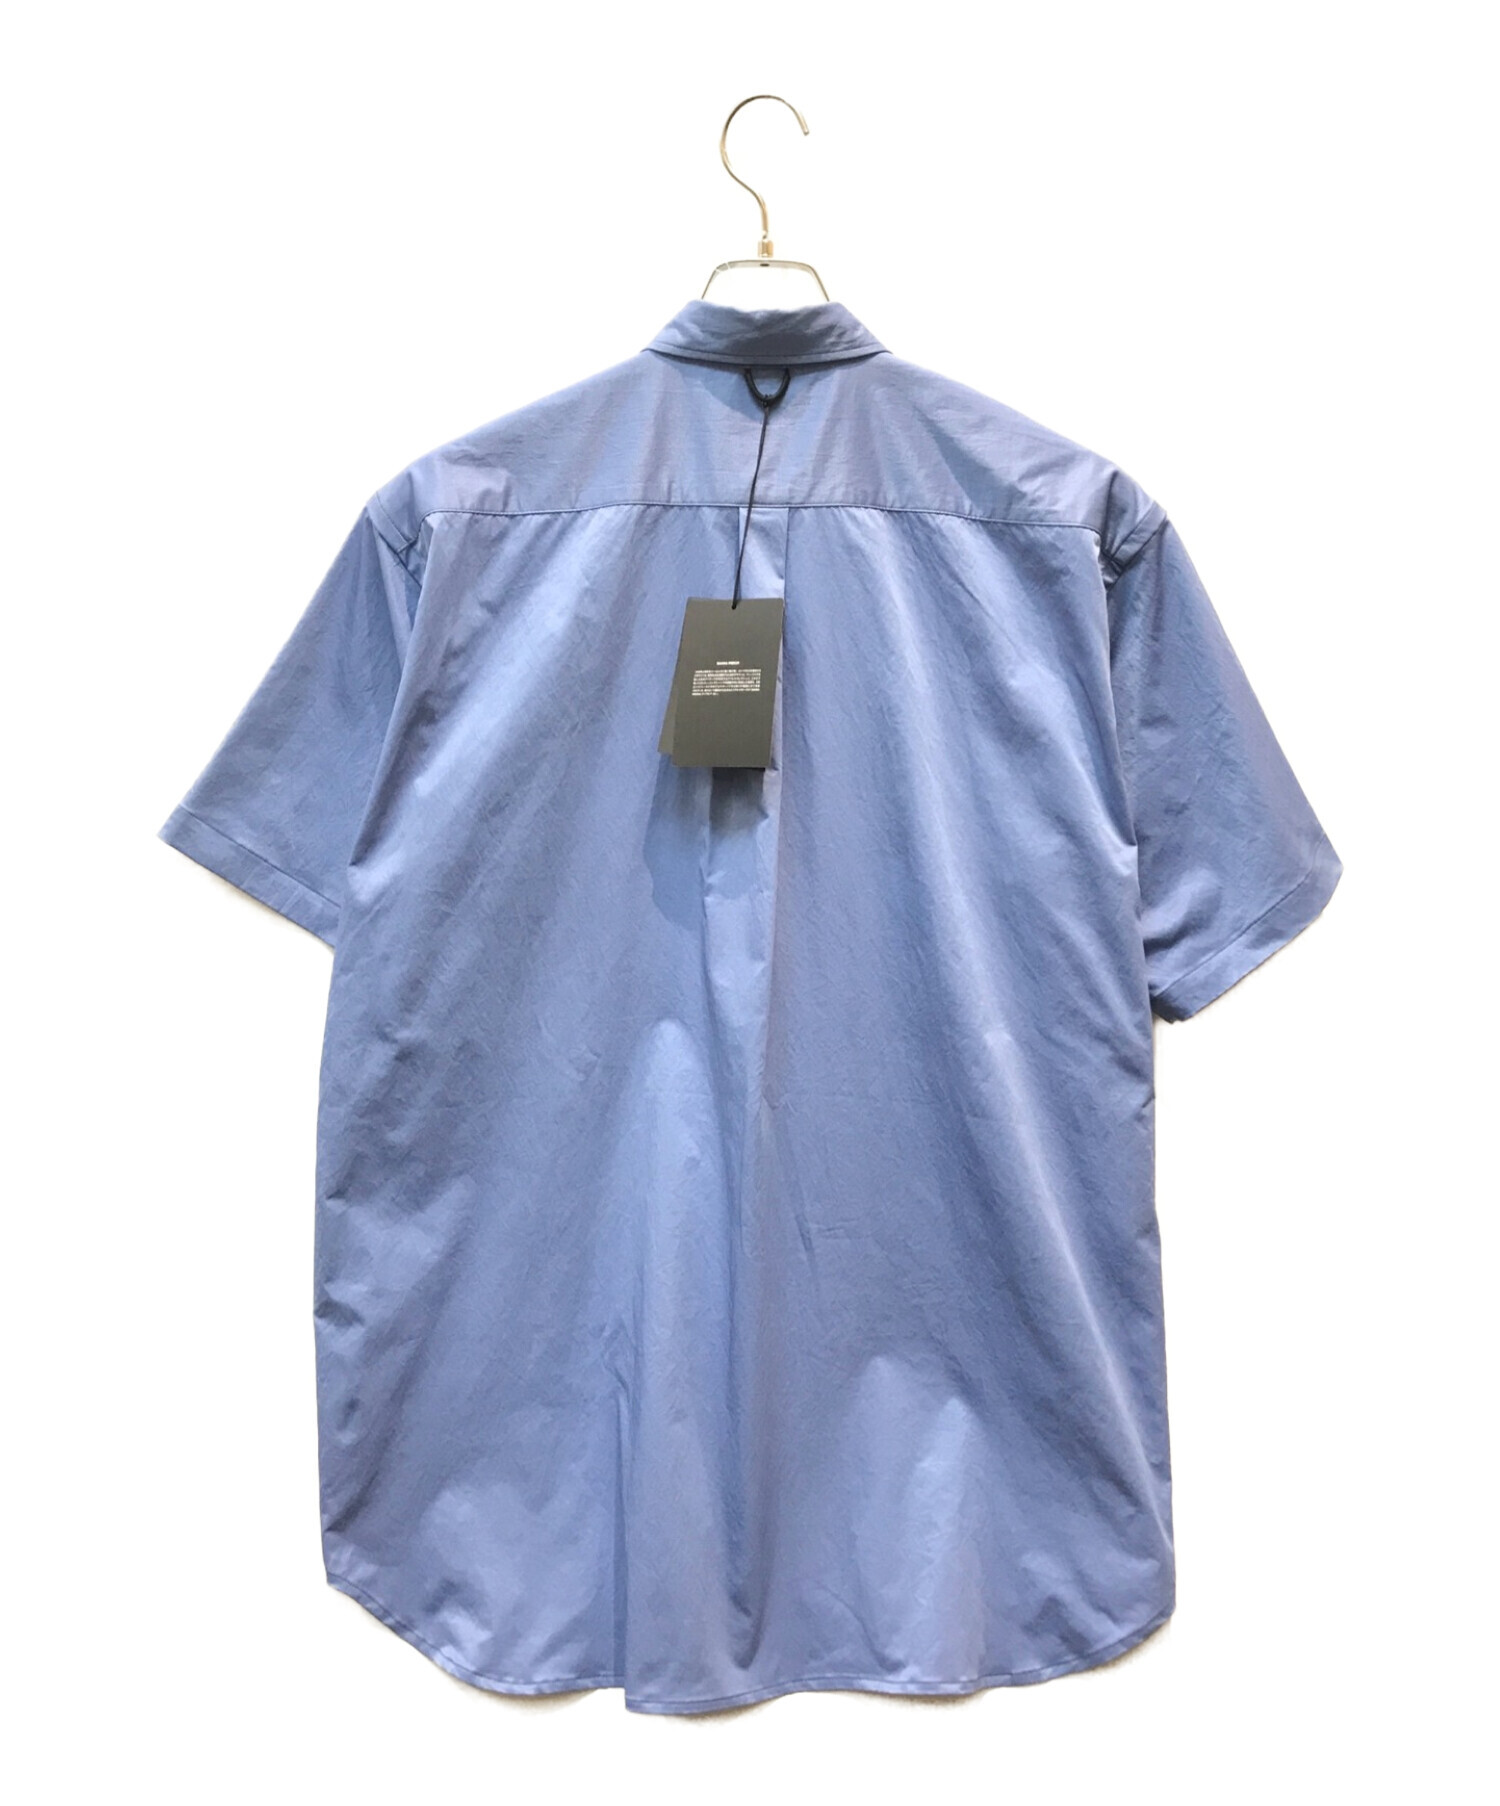 DAIWA PIER39 (ダイワ ピア39) 半袖シャツ ブルー サイズ:M